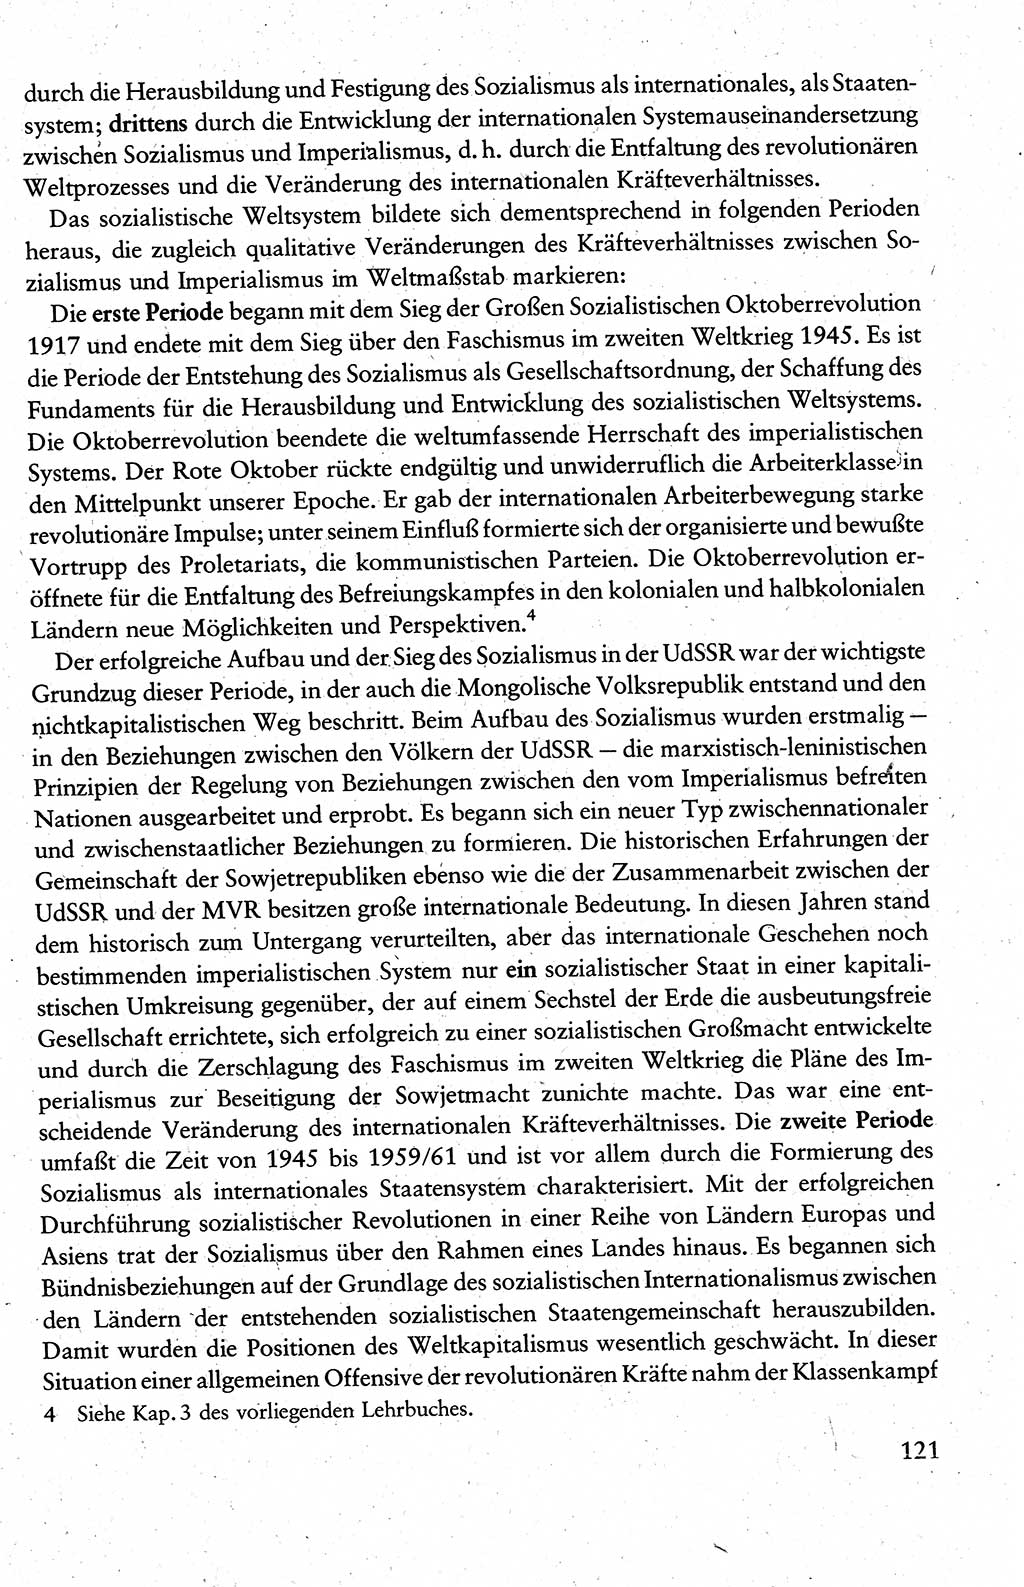 Wissenschaftlicher Kommunismus [Deutsche Demokratische Republik (DDR)], Lehrbuch für das marxistisch-leninistische Grundlagenstudium 1983, Seite 121 (Wiss. Komm. DDR Lb. 1983, S. 121)